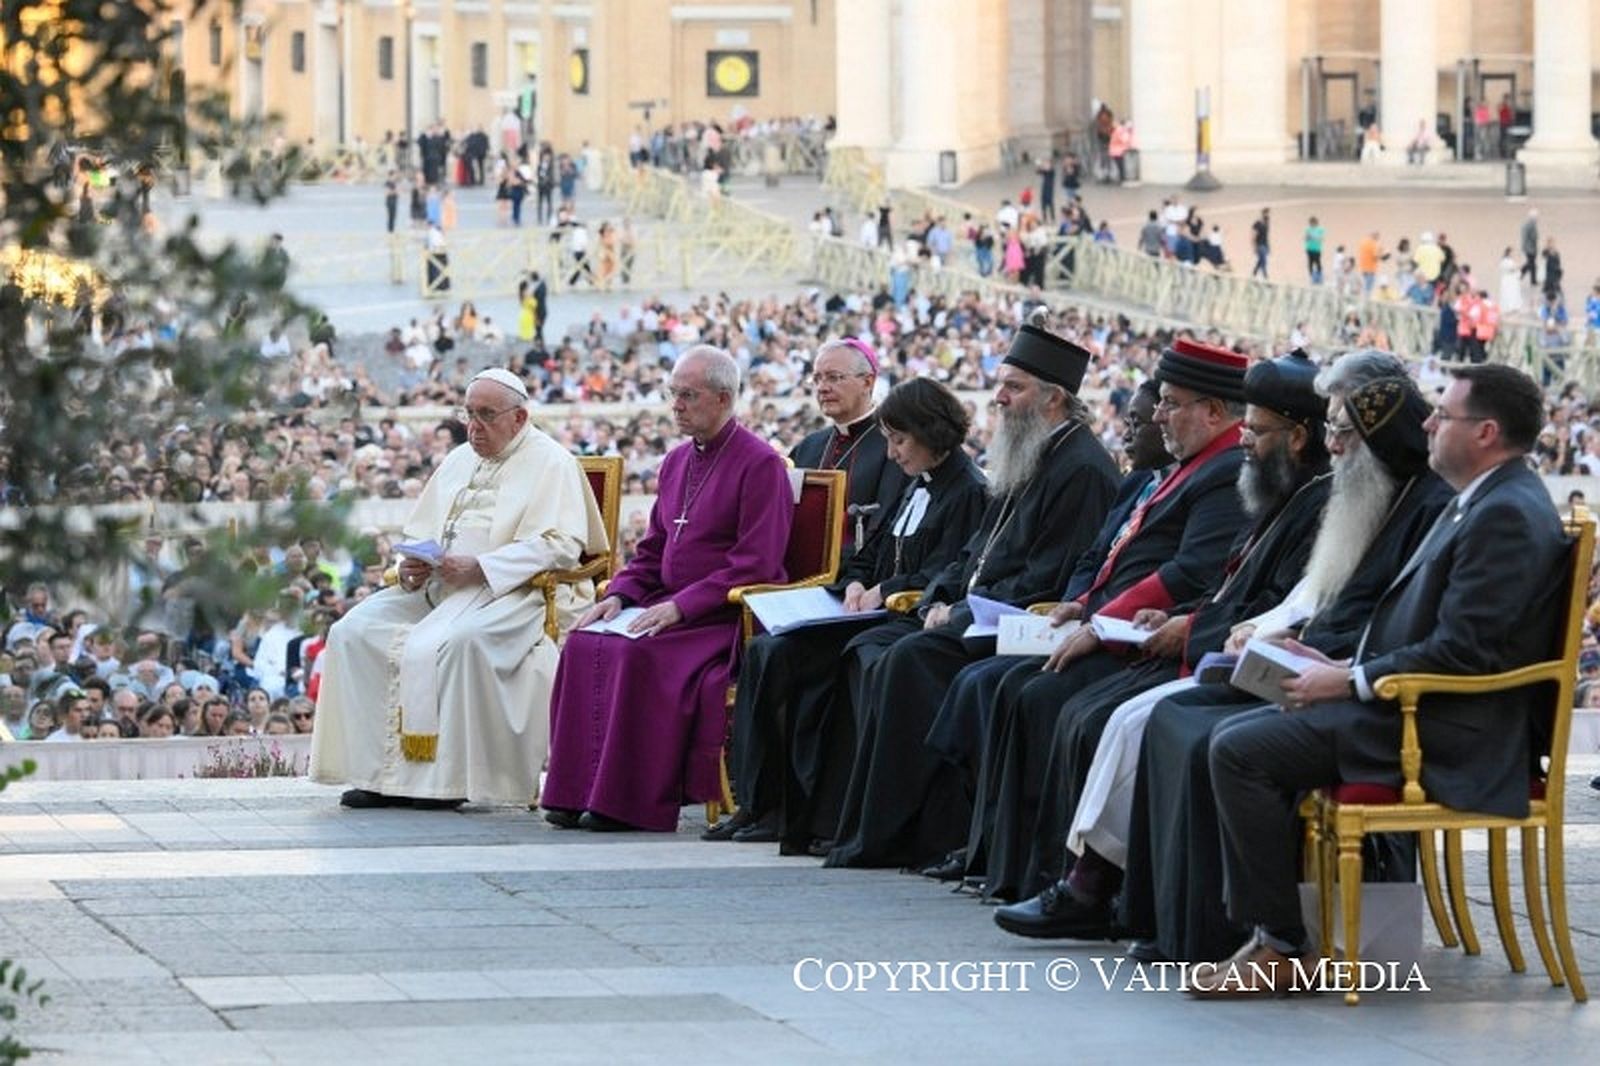 De wake van Together met de paus en andere christelijke leiders.